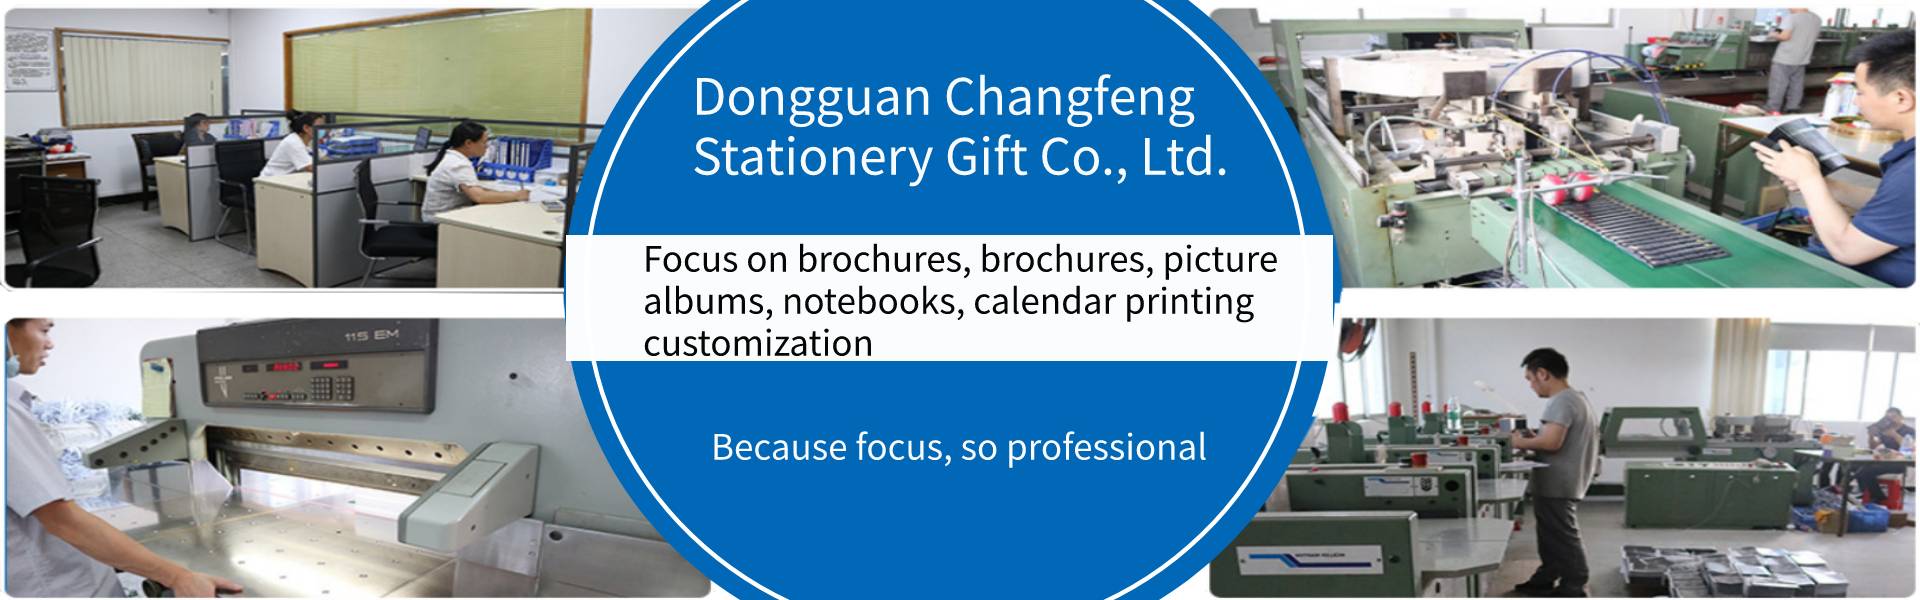 εγχειρίδιο οδηγιών, άλμπουμ εικόνων, σημειωματάριο,Dongguan Changfeng Stationery Gift Co., Ltd.